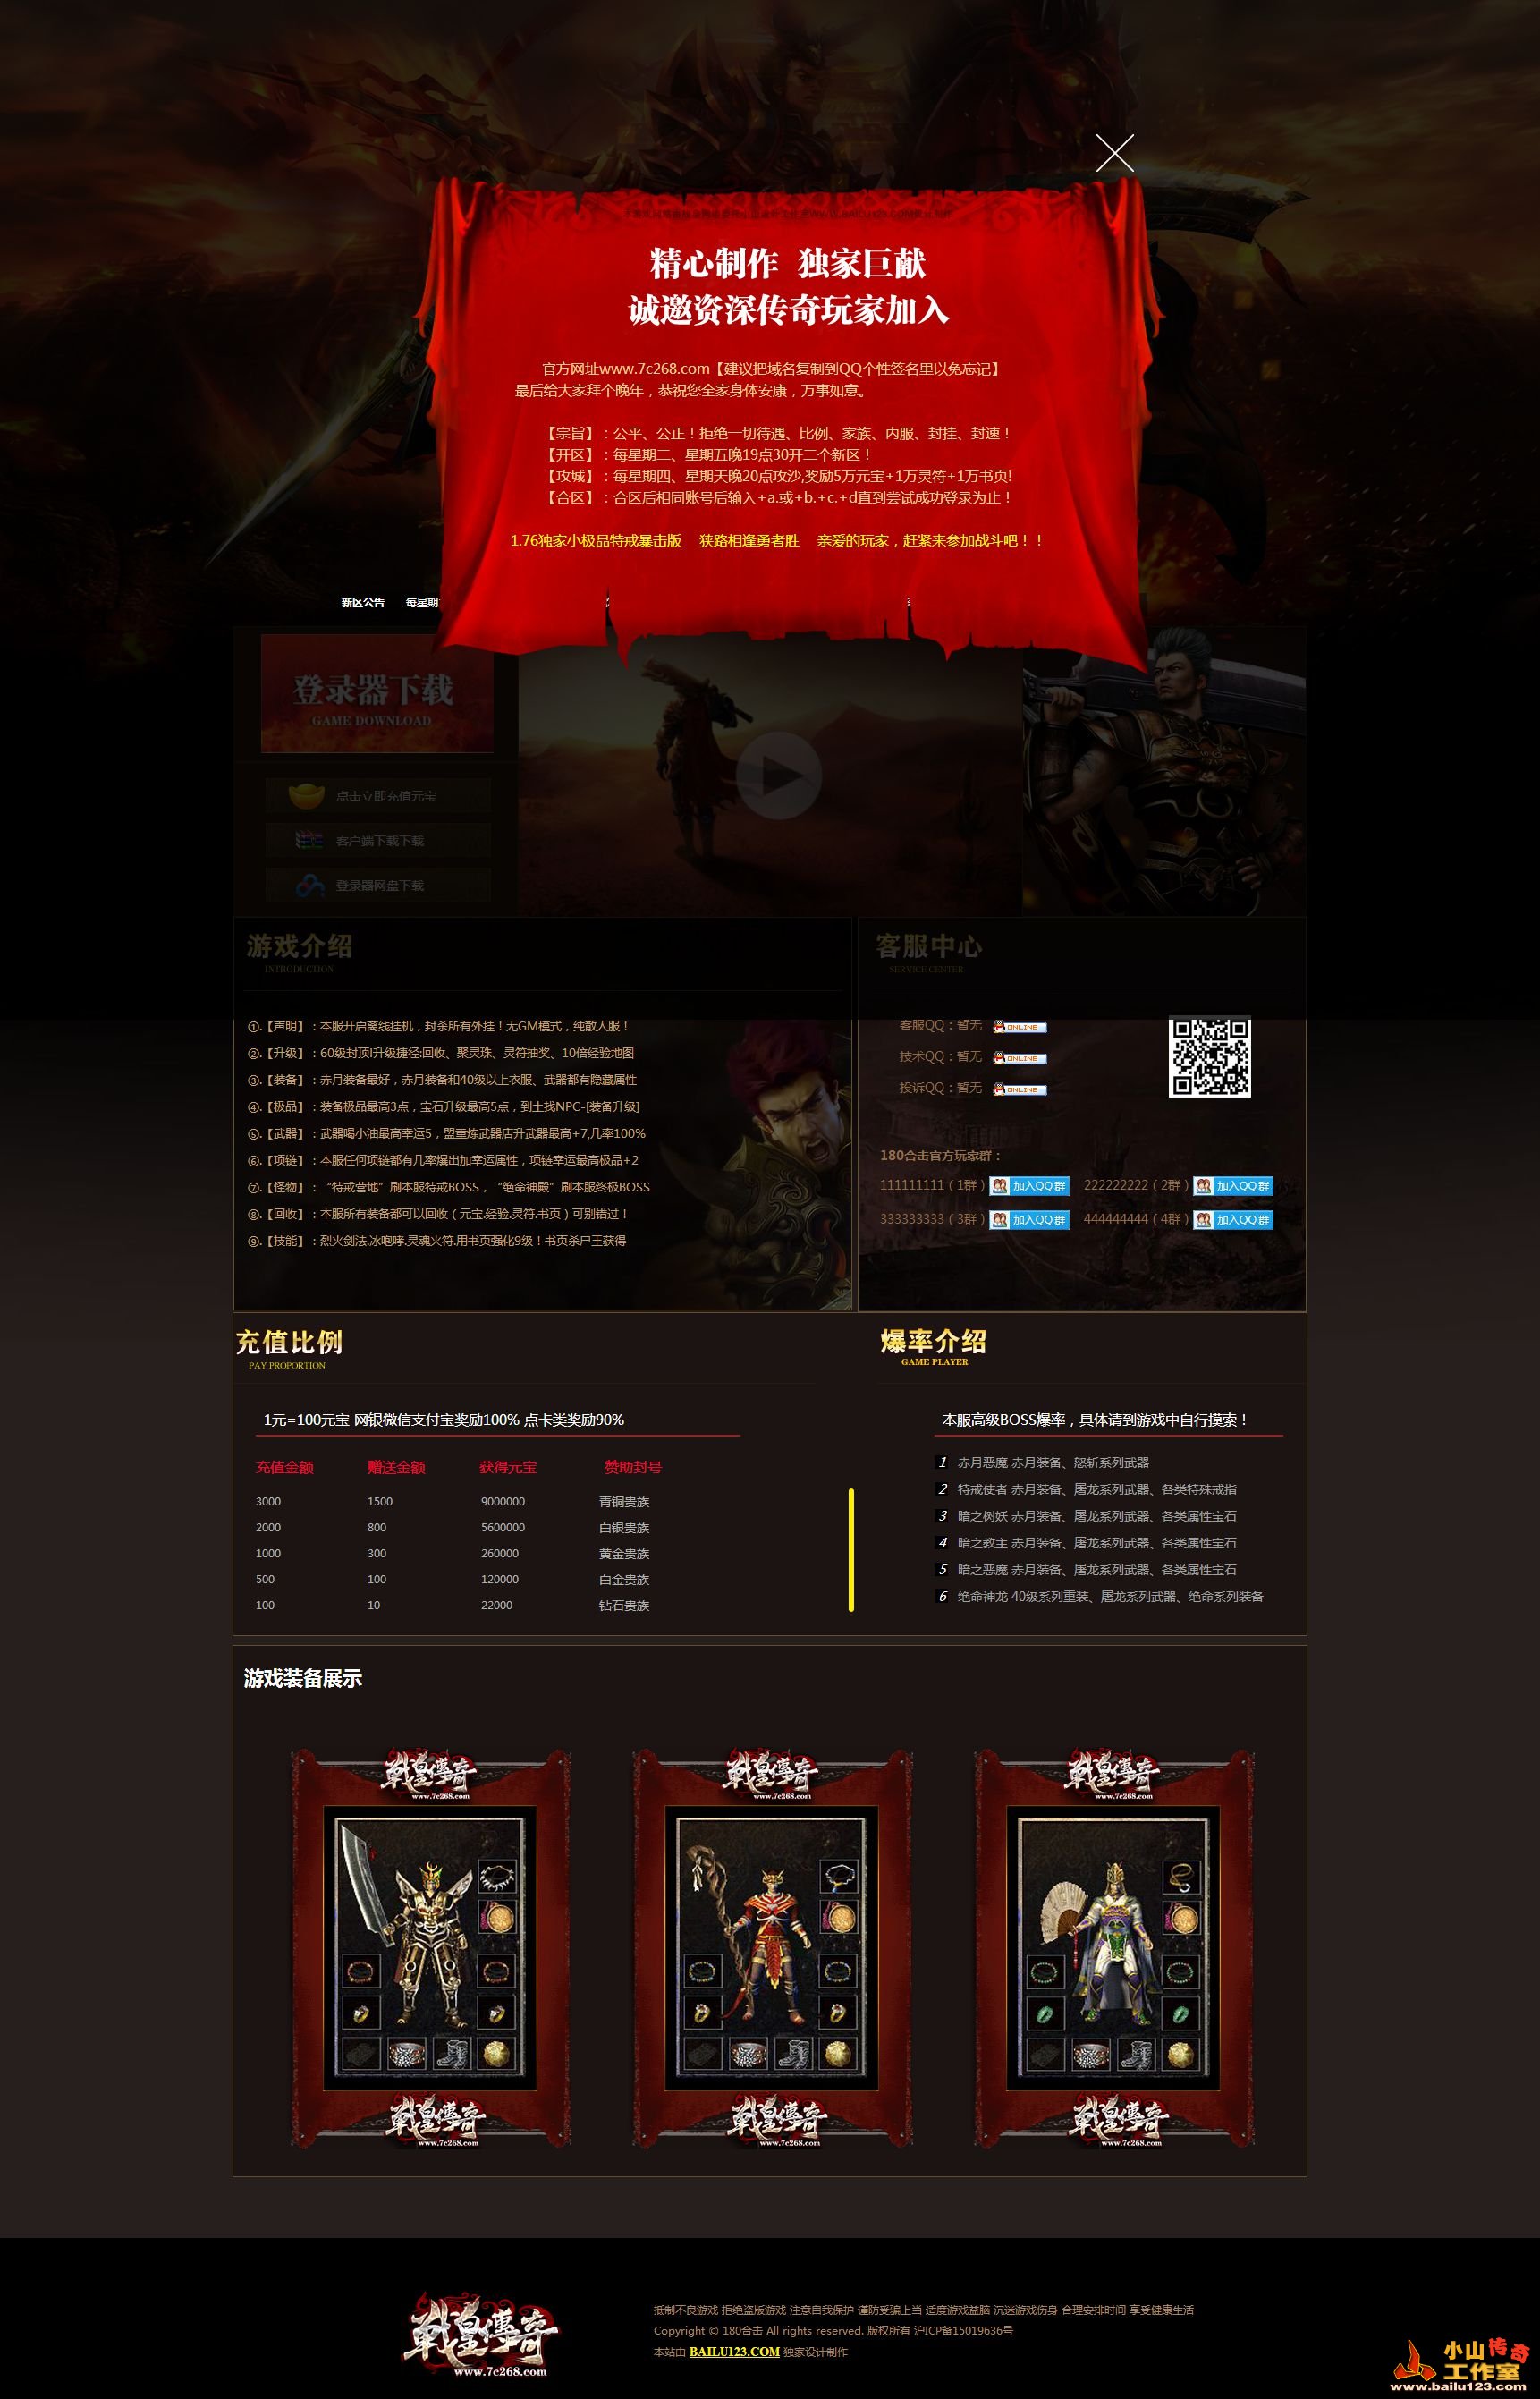 设计案例欣赏--战皇传奇网站遮罩广告功能展示